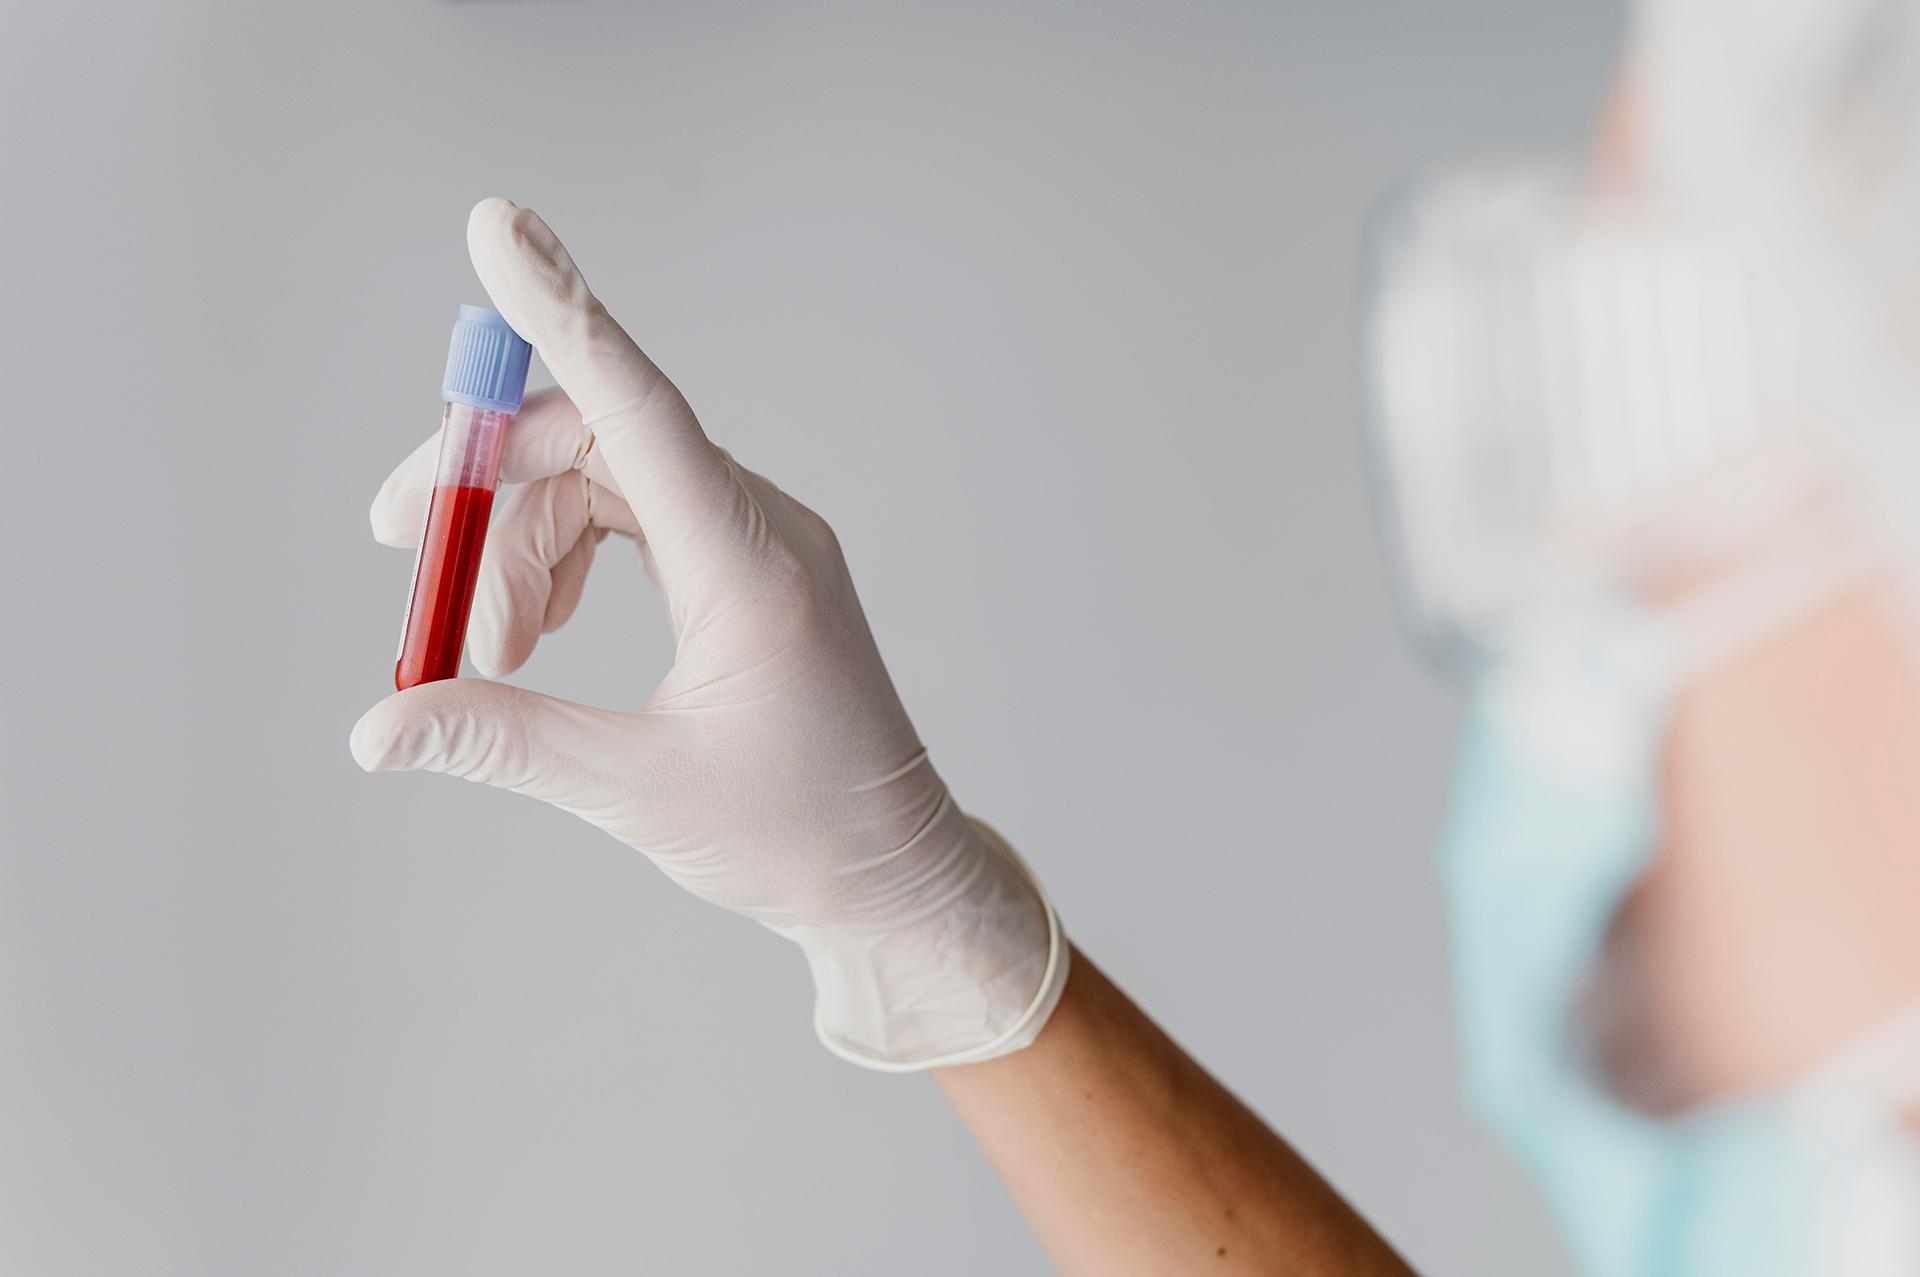 रक्त समूह परीक्षण: यह कैसे किया जाता है और विभिन्न प्रकार के रक्त क्या हैं?